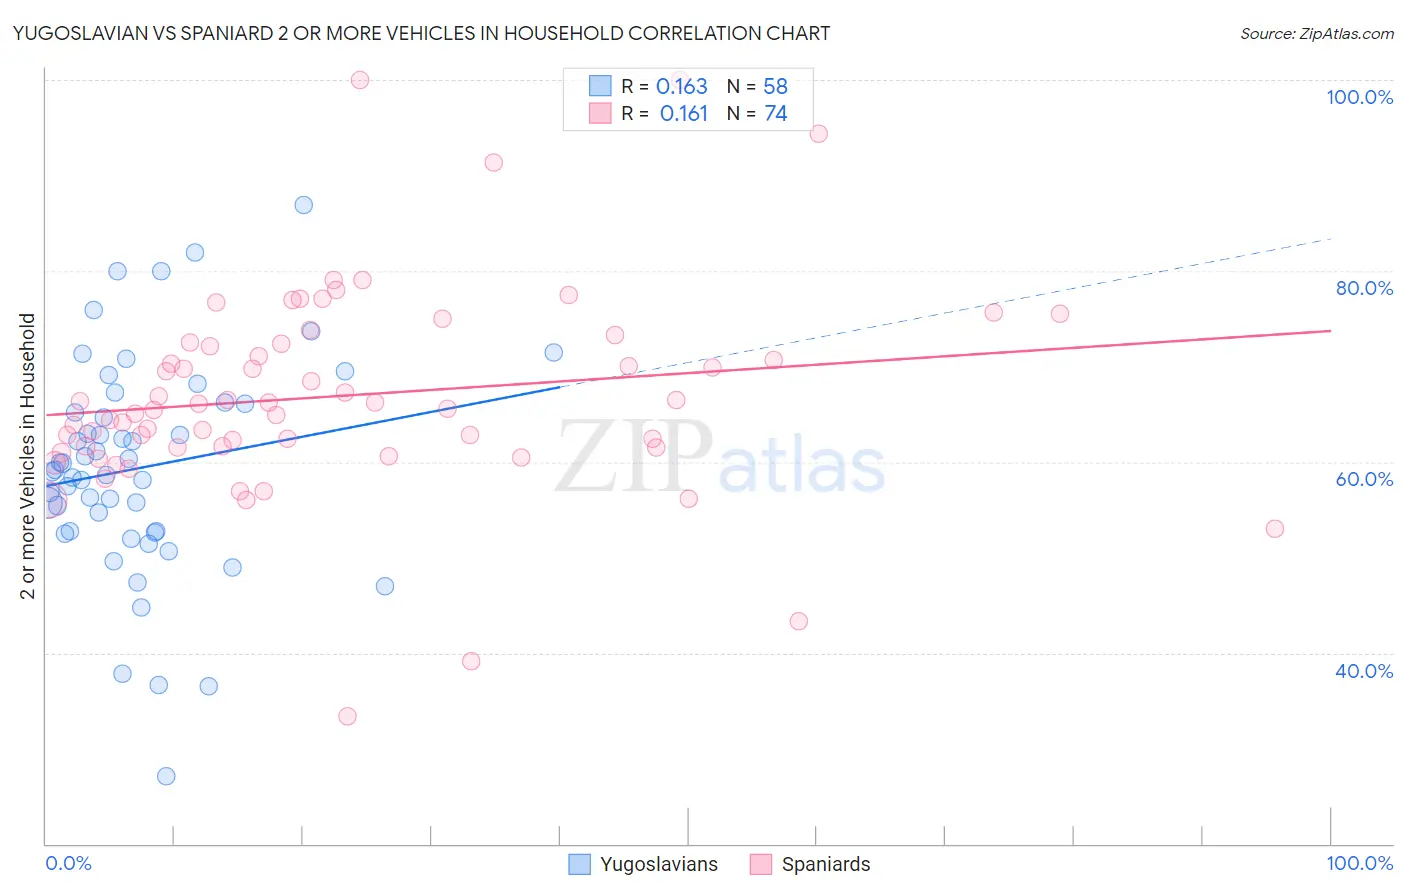 Yugoslavian vs Spaniard 2 or more Vehicles in Household